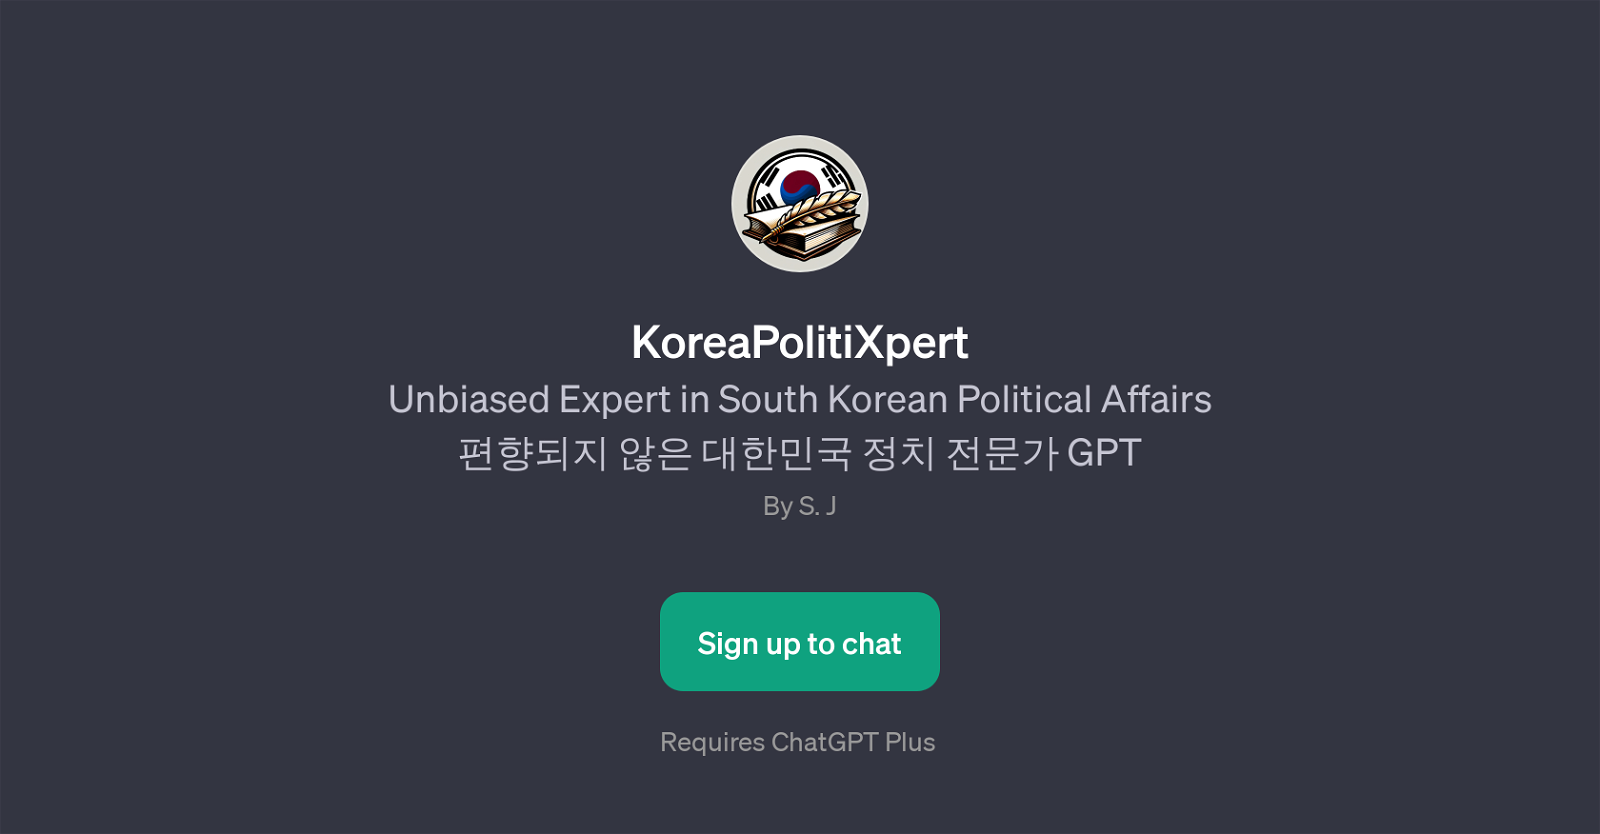 KoreaPolitiXpert website